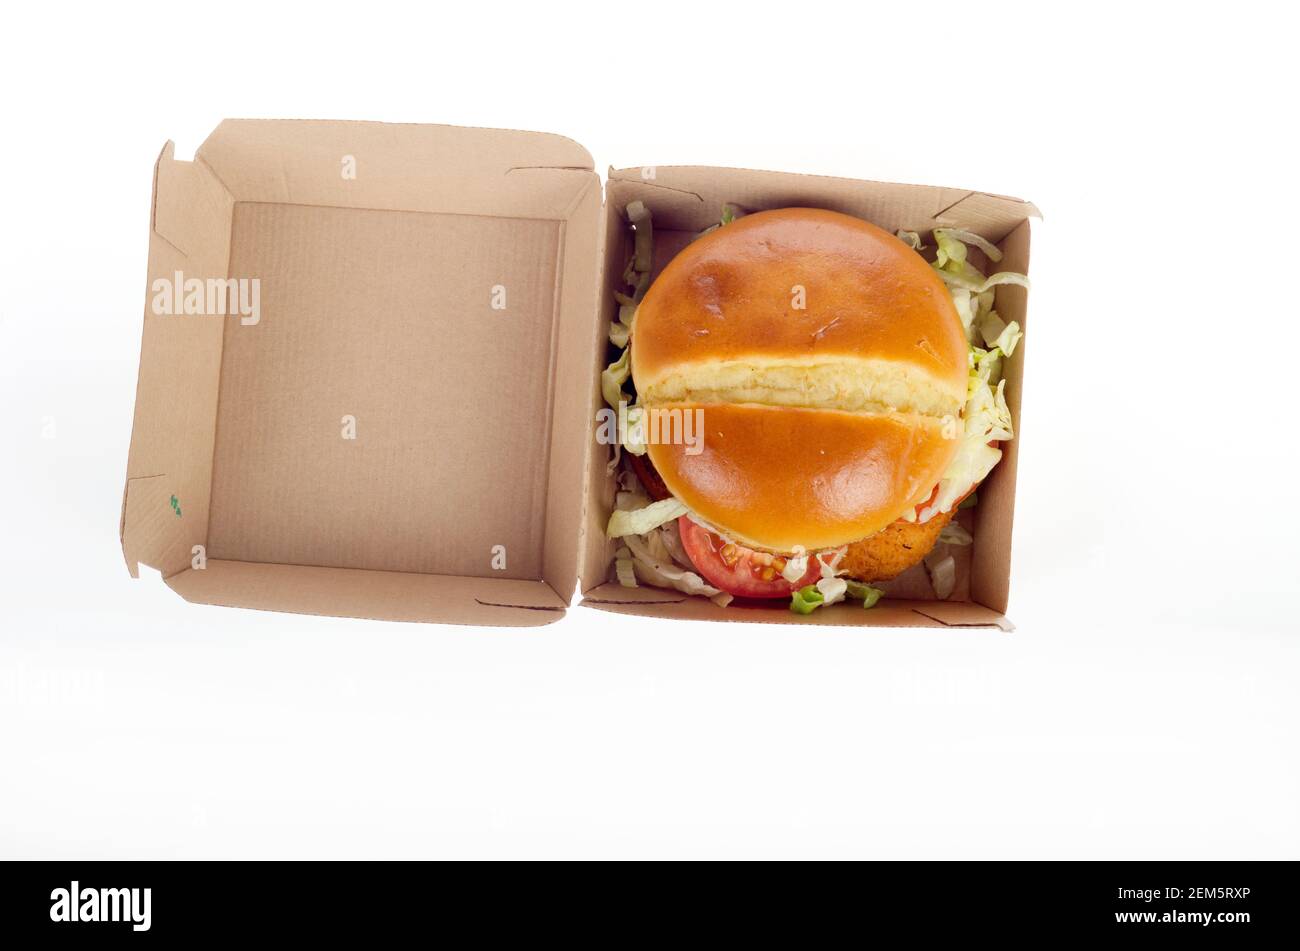 McDonalds New Crispy Chicken Sandwich Deluxe dans la boîte. Publié le 24 février 2021 Banque D'Images